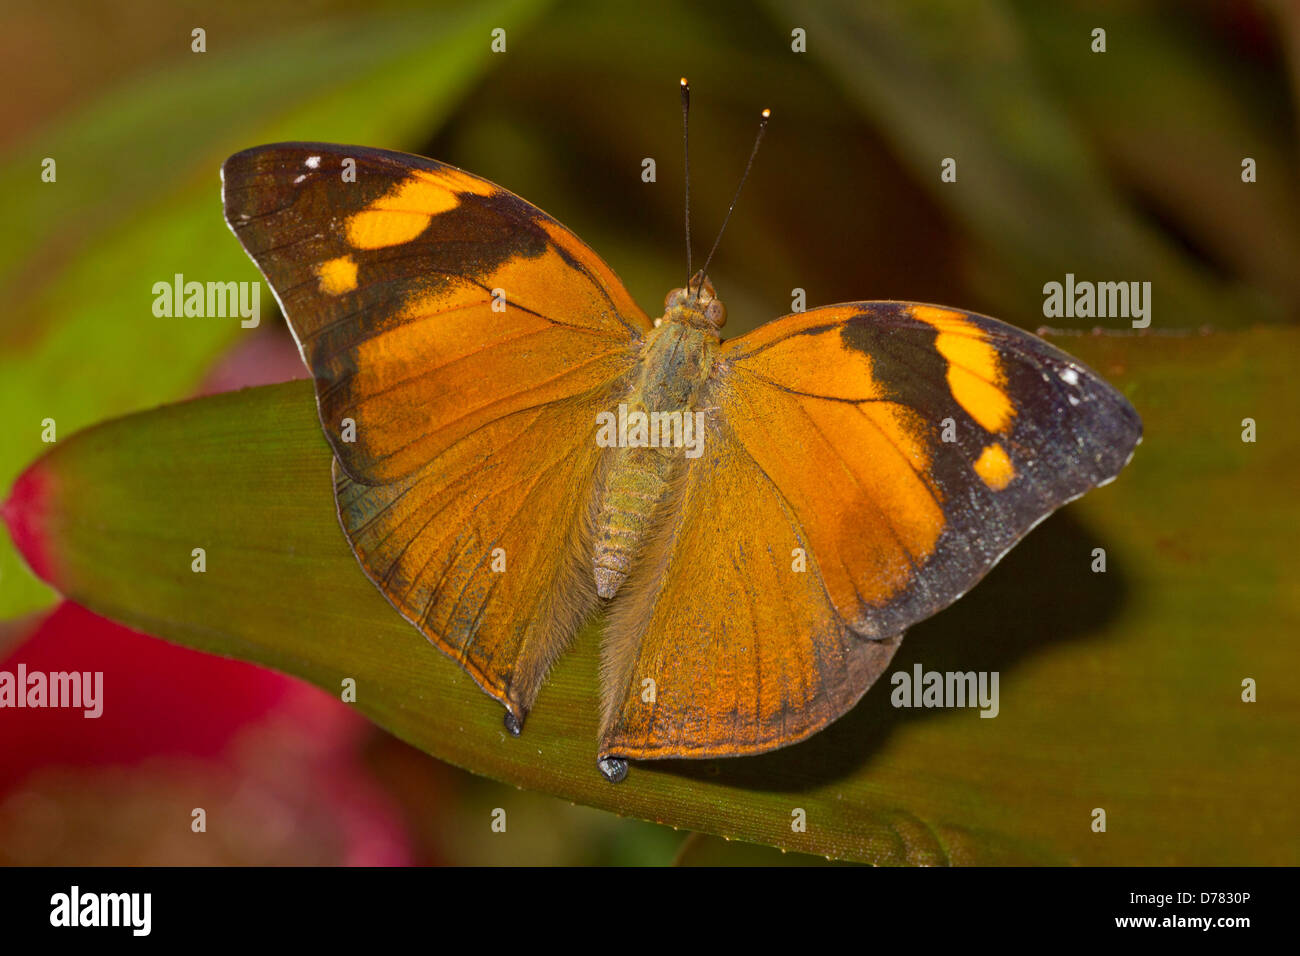 Hoja de Otoño mariposa bisaltide Doleschallia encaramado en la hoja Foto de stock